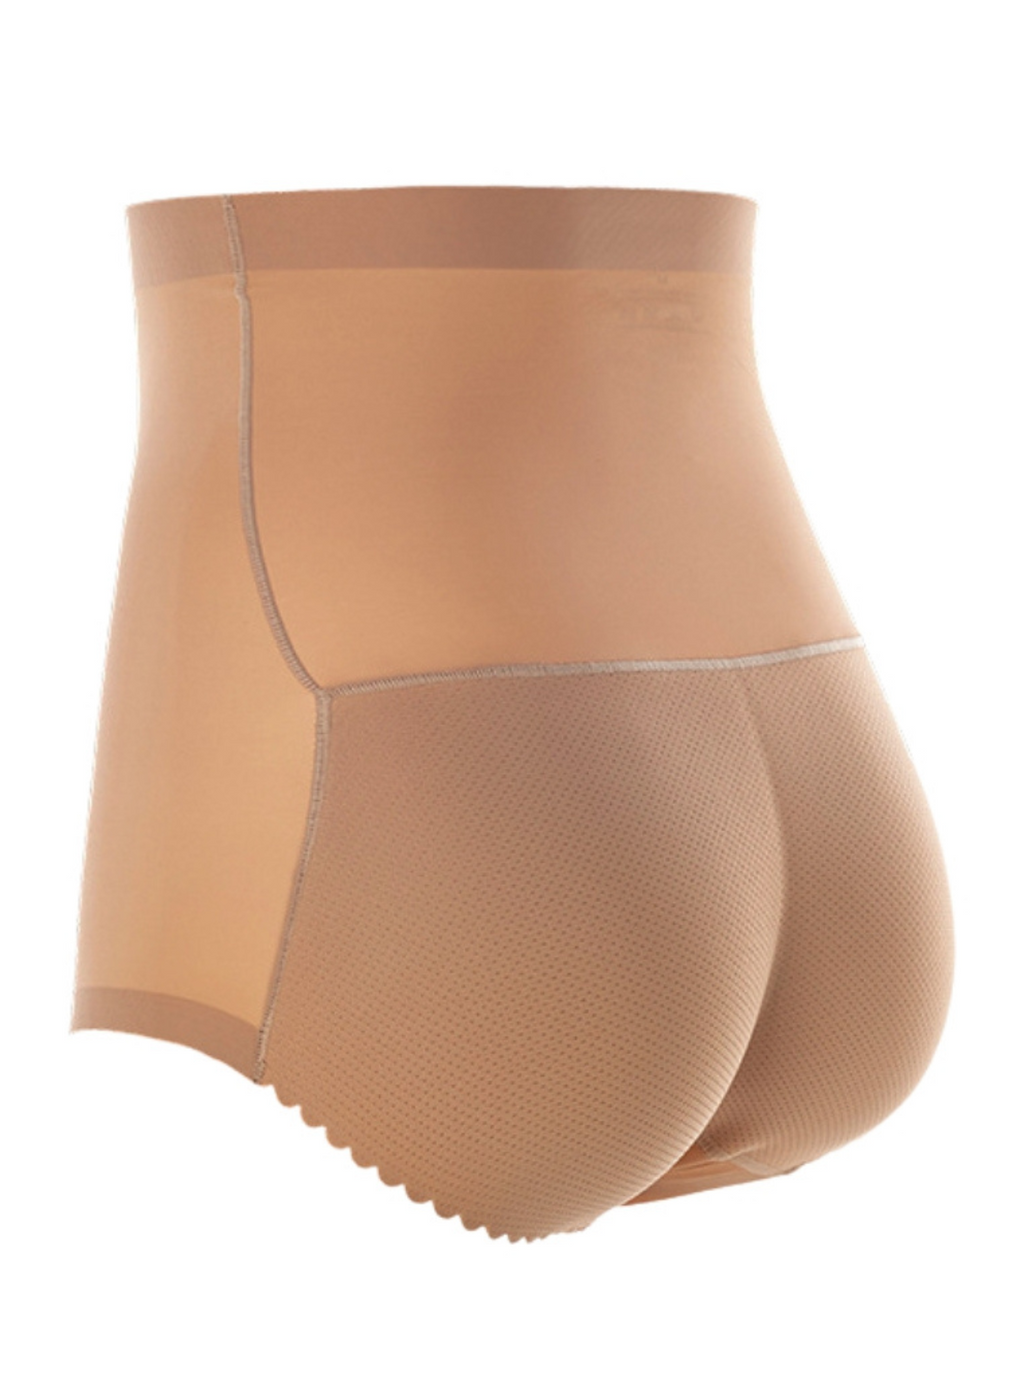 Kelsie Butt Lifter Low Waist Panties Seamless Padded Underwear in